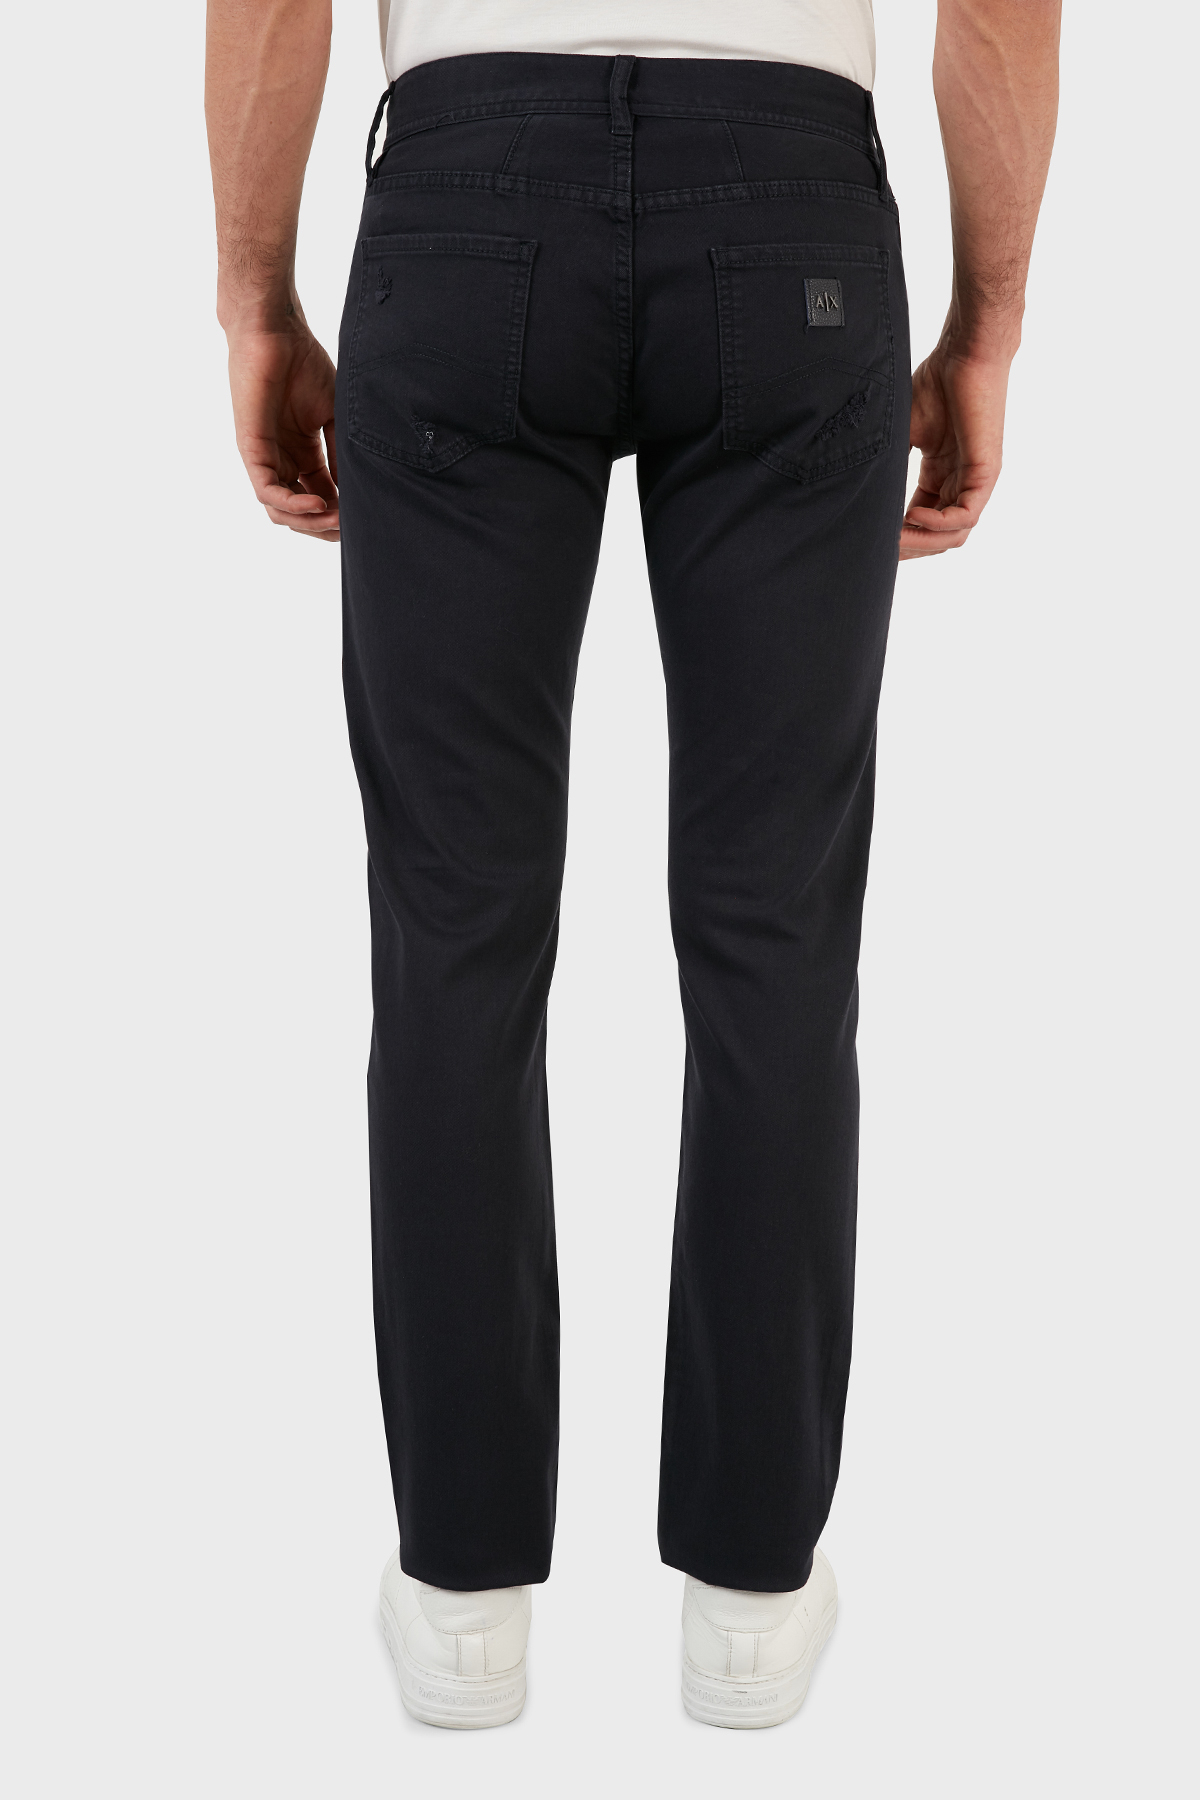 Armani Exchange Pamuklu Yüksek Bel J13 Jeans Erkek Kot Pantolon 6KZJ13 Z1AAZ 1510 LACİVERT